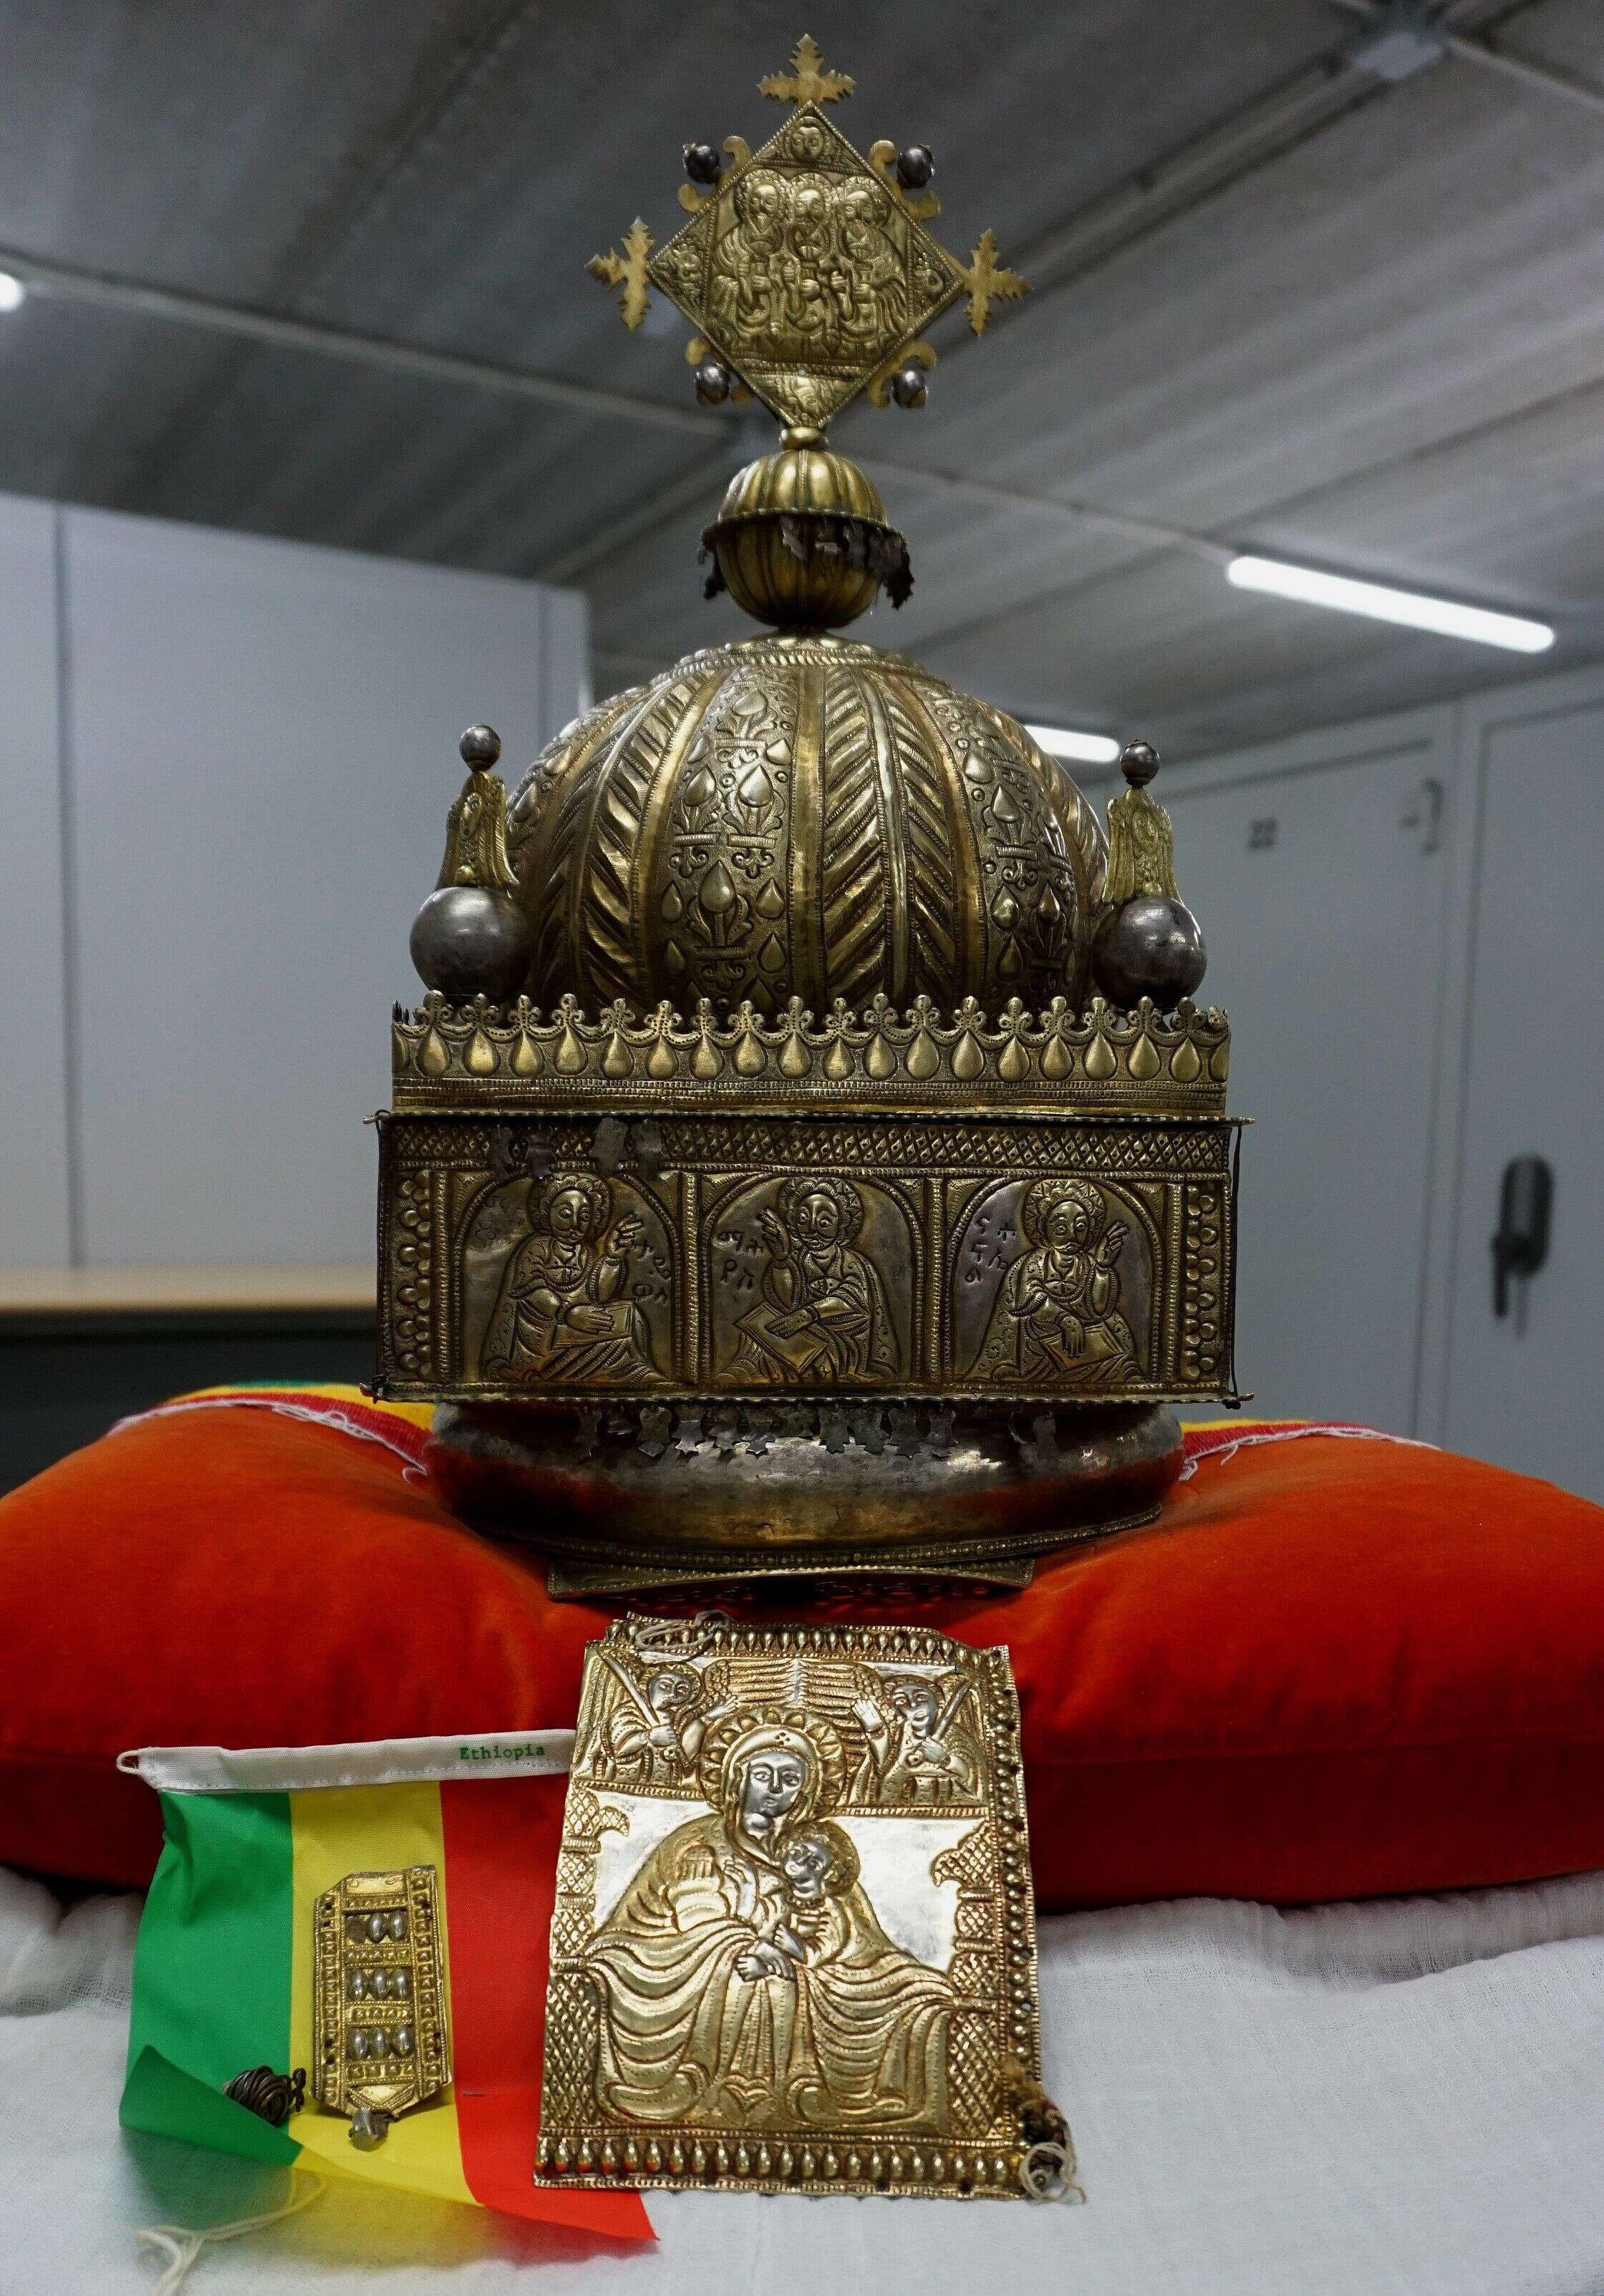 Une couronne éthiopienne d'une valeur inestimable, datant du 18e siècle, sera bientôt de retour à Addis-Abeba